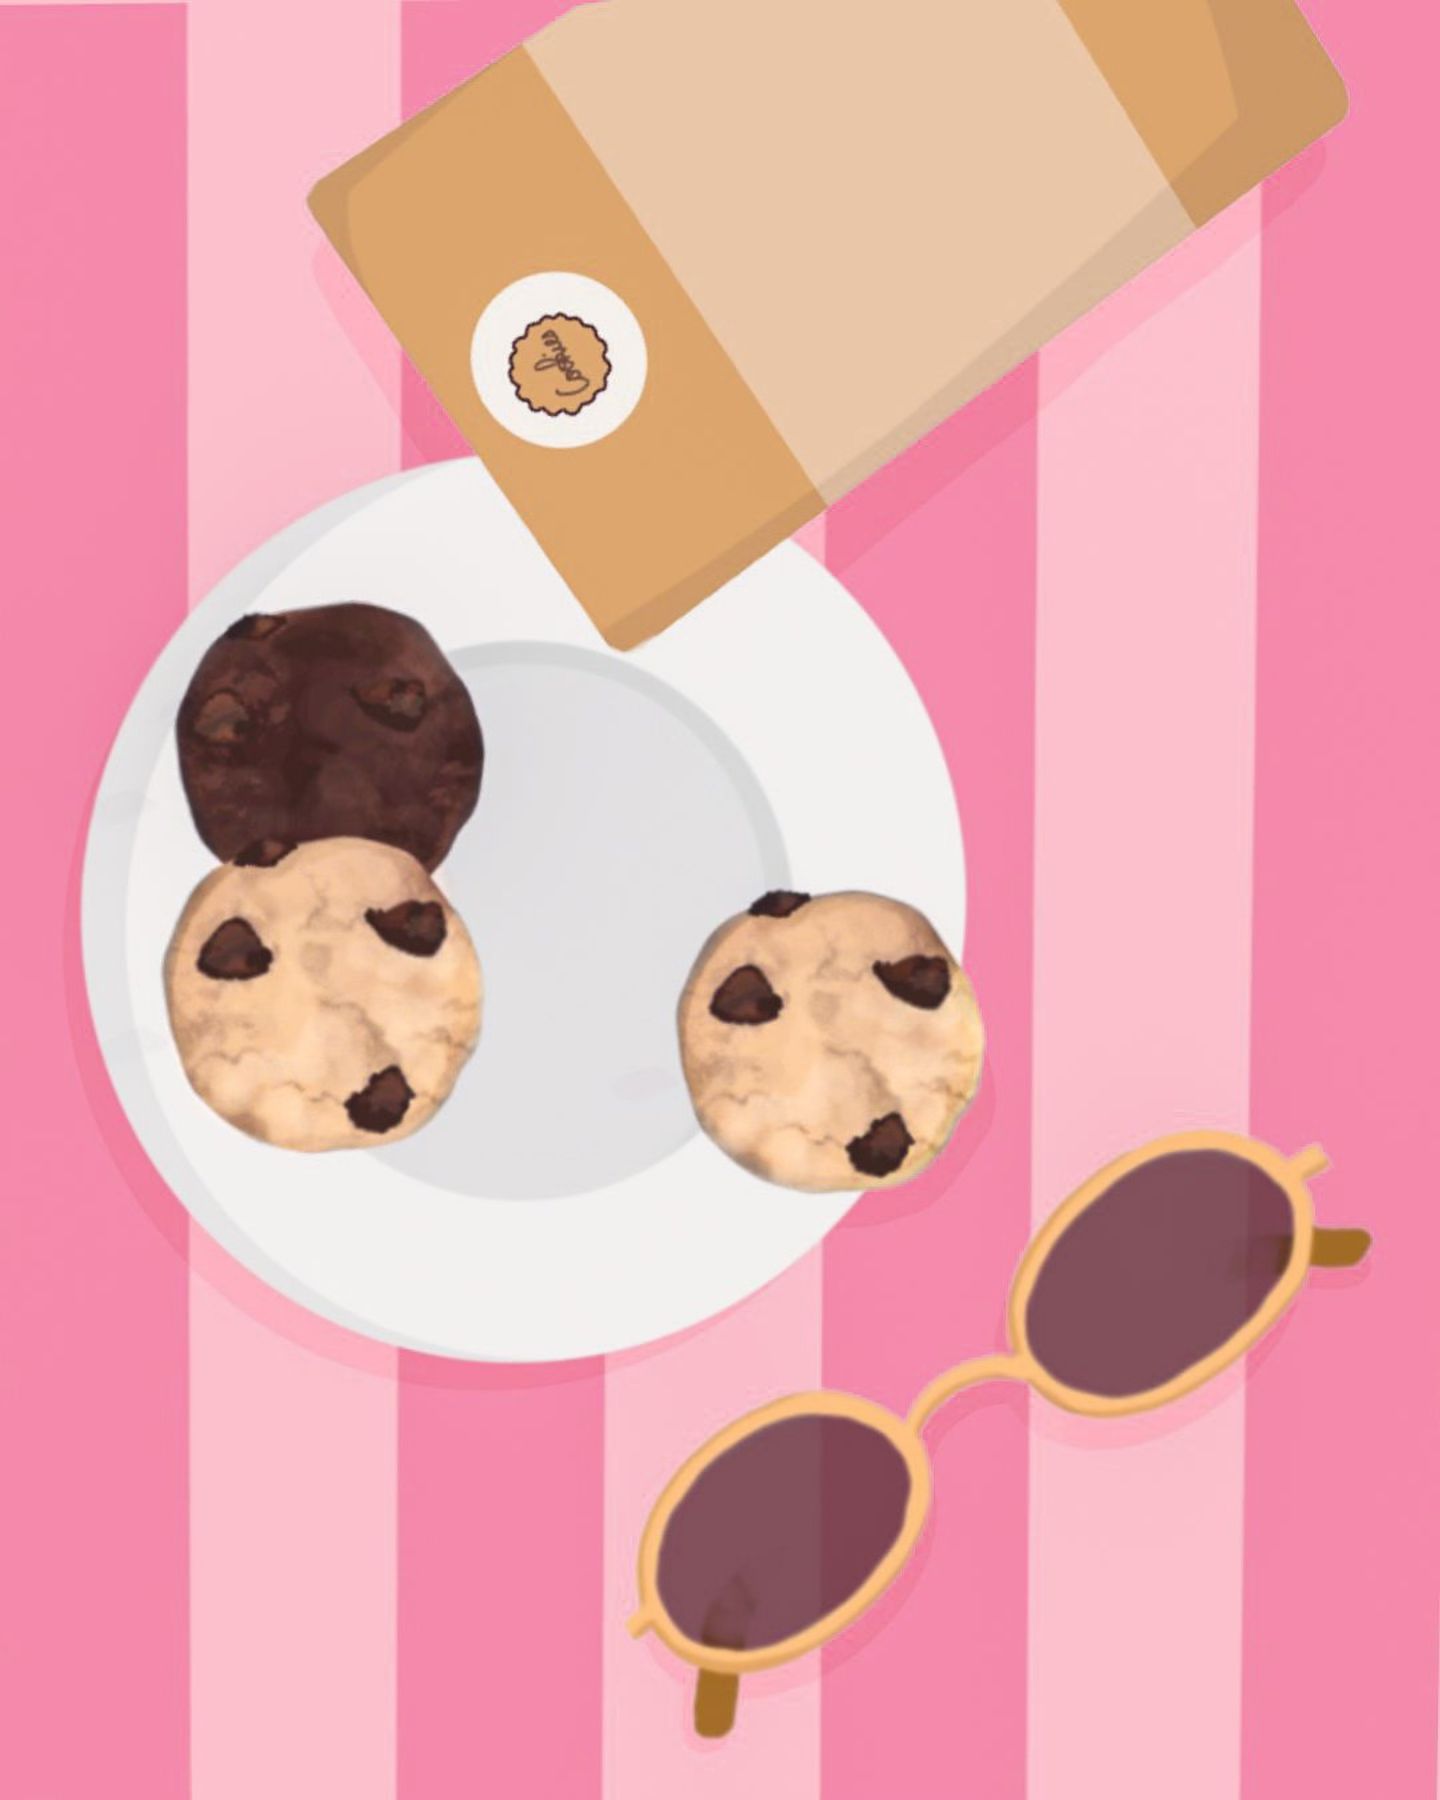 La vie en rose avec Cookies Giraudon ! 🩷

🍪 Faits maison à Gémenos (13)
📍Disponibles dans plusieurs points de vente
💌 Plus d’infos sur notre site web (lien dans notre bio)

#CookiesGiraudon #Bonheur #CookiesAvecAmour #GourmandiseAuthentique #homemadewithlove #CookiesArtisanaux #FaitAvecAmour #Gémenos #CuisineArtisanale #marseille #MadeInFrance